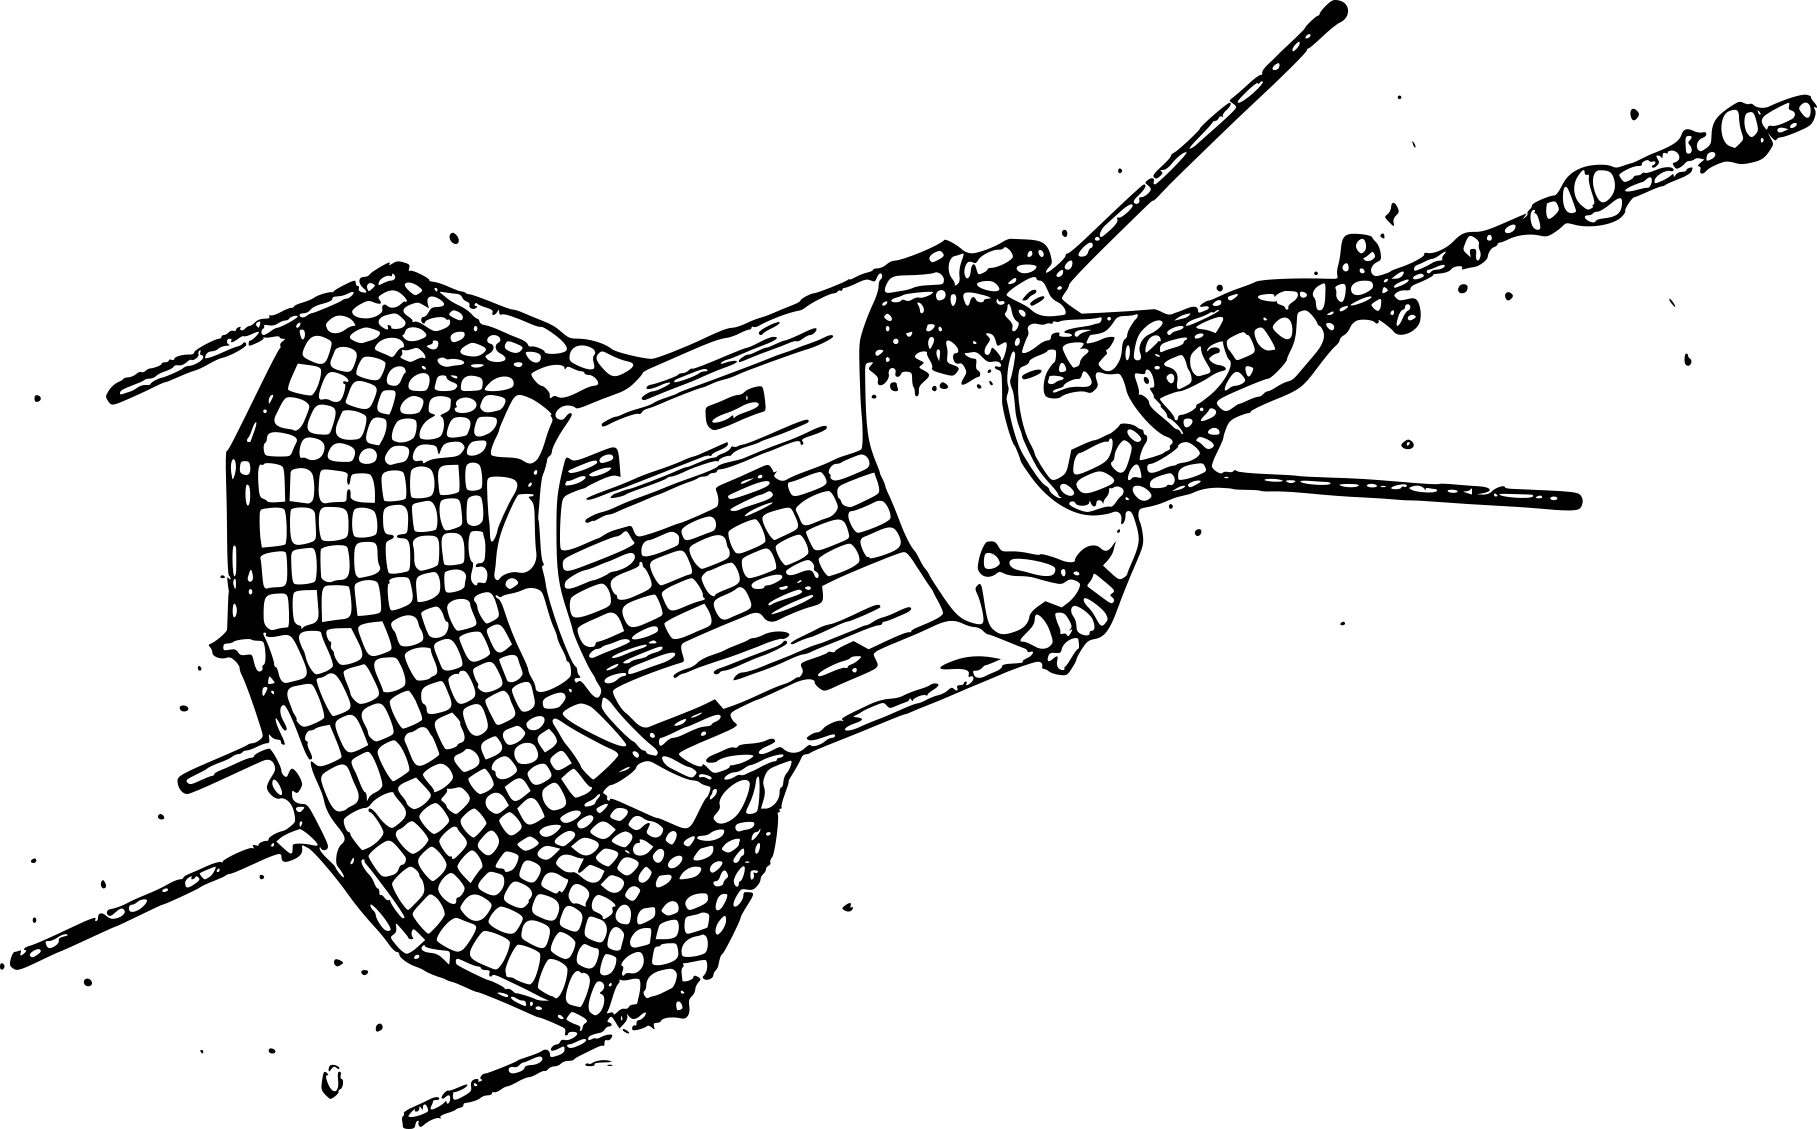 Первый спутник рисунок. Чертеж ИСЗ Спутник 1. Космический аппарат "Гео-ИК" 2. Космический аппарат "Гео-ИК" 2 чертежи. ИСЗ «Коперник».